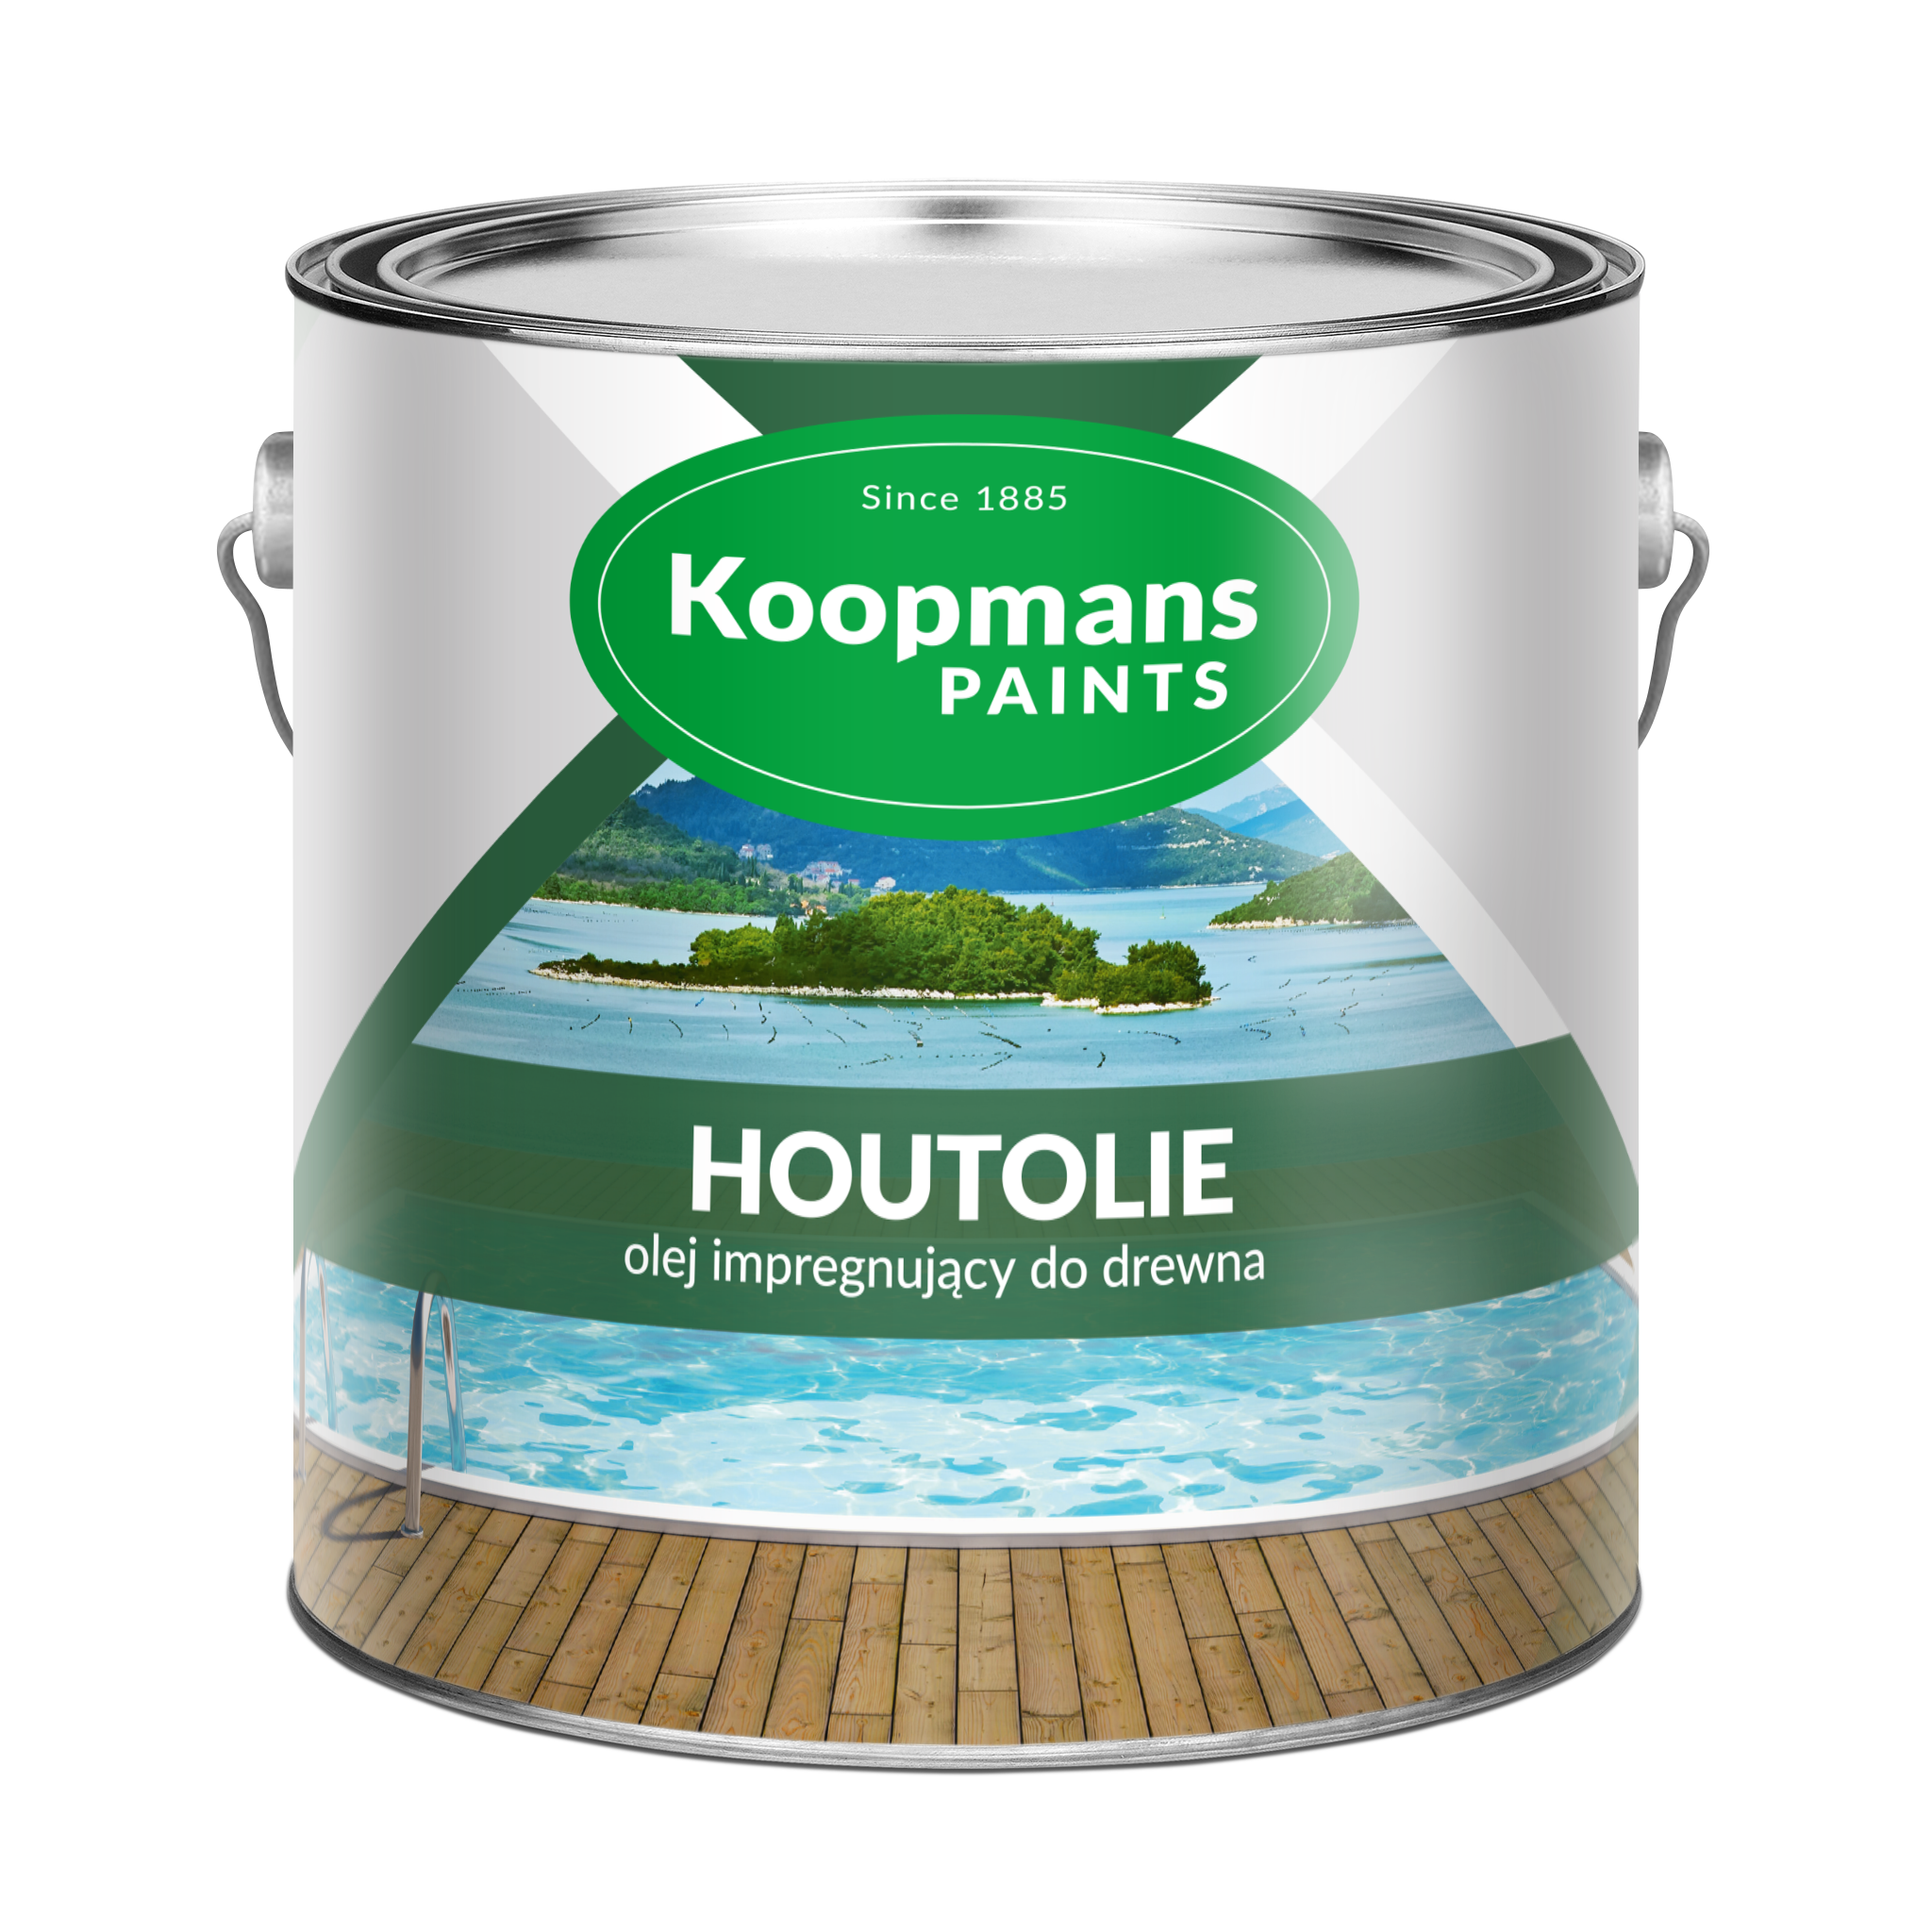 KOOPMANS HOUTOLIE - Olej impregnujący pinia śródziemnomorska 2,5L